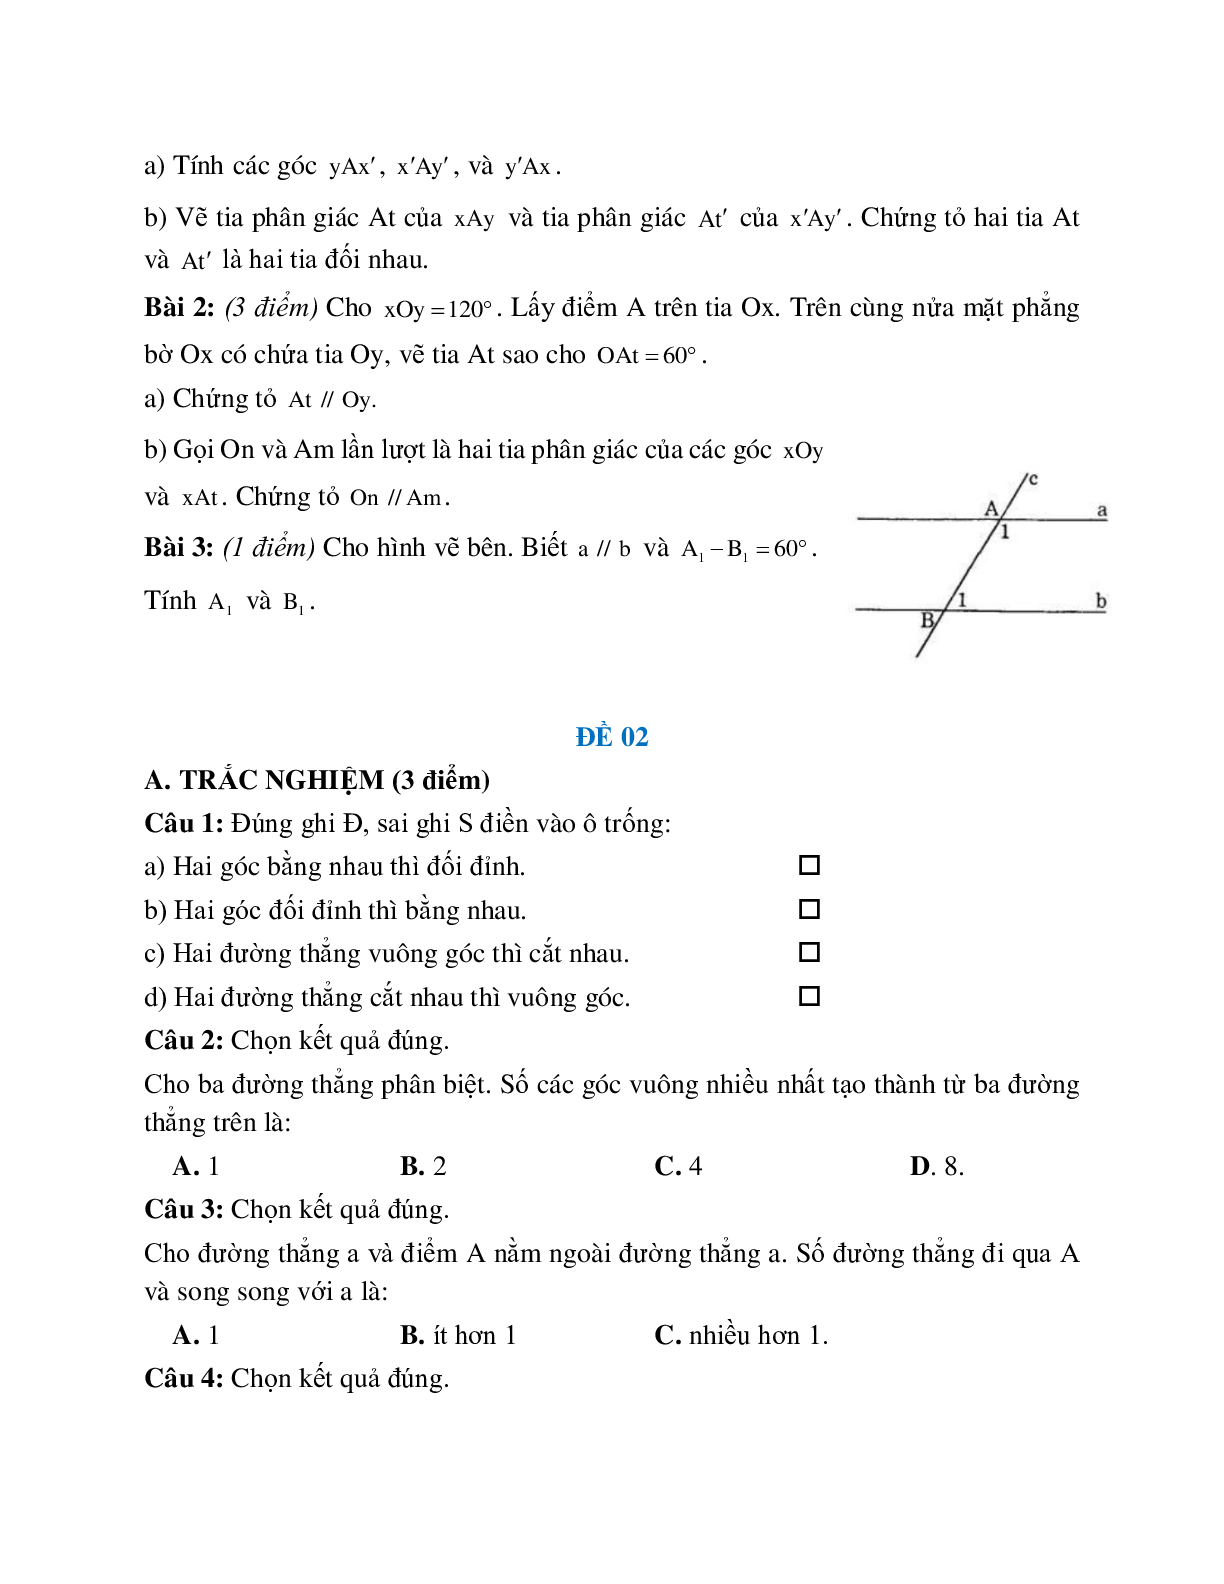 Đề ôn tập đường thẳng vuông góc, đường thẳng song song (5 đề) (trang 2)